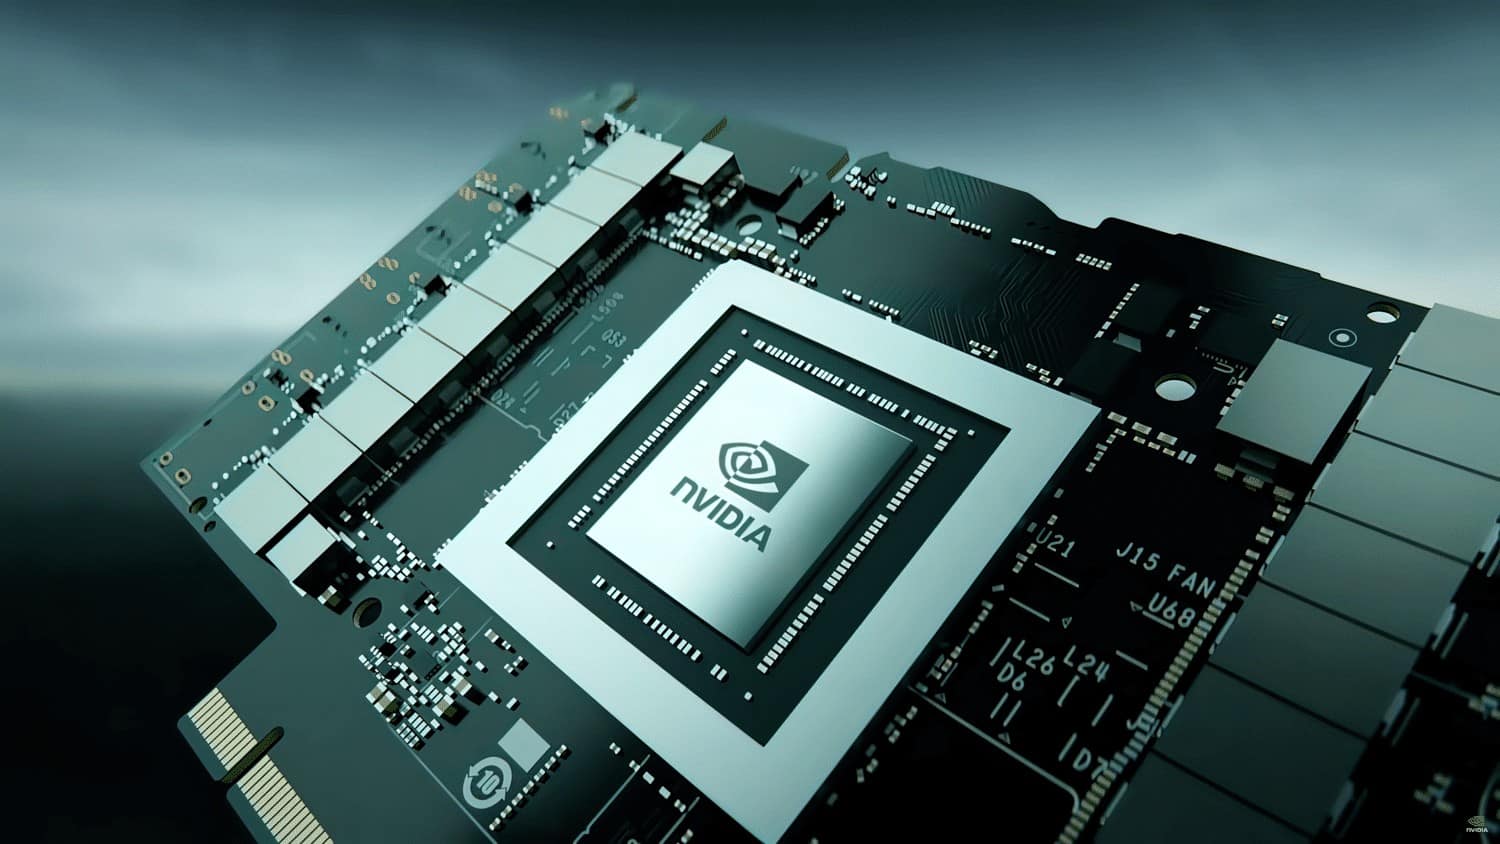 NVIDIAの次期フラッグシップGPUは18176コアと48GBメモリを積んでおり、TDP800Wのモンスターになる可能性